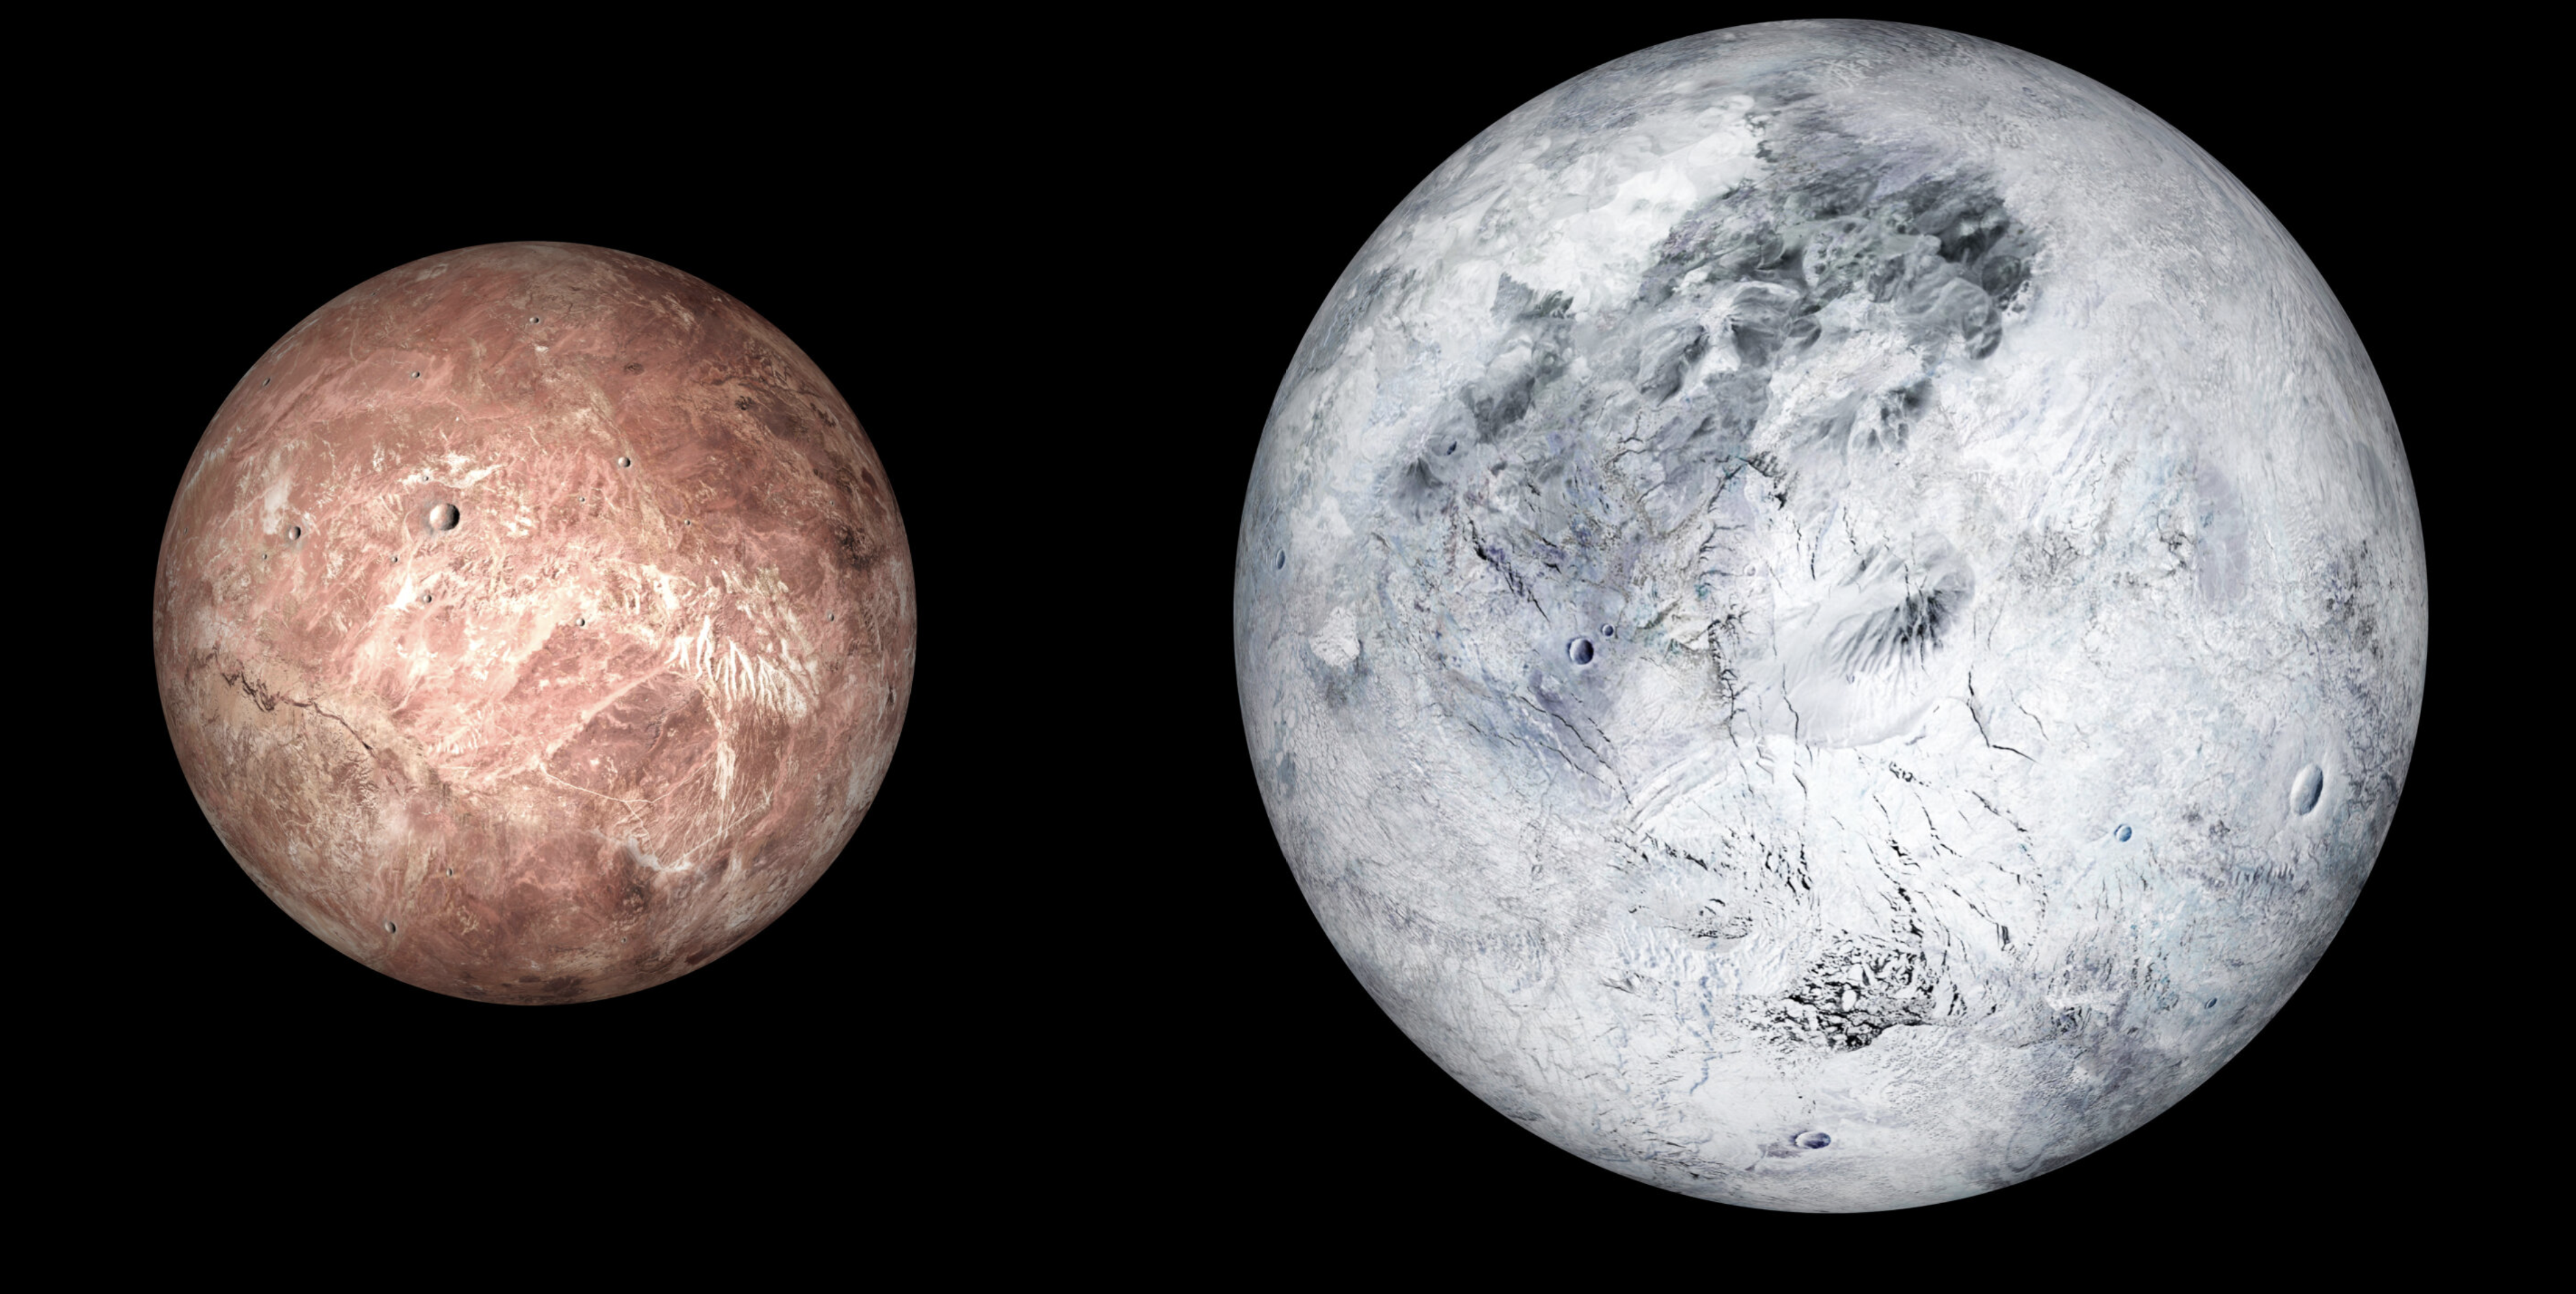 Ilustracija patuljastih planeta Makemake (lijevo) i Eris (desno).